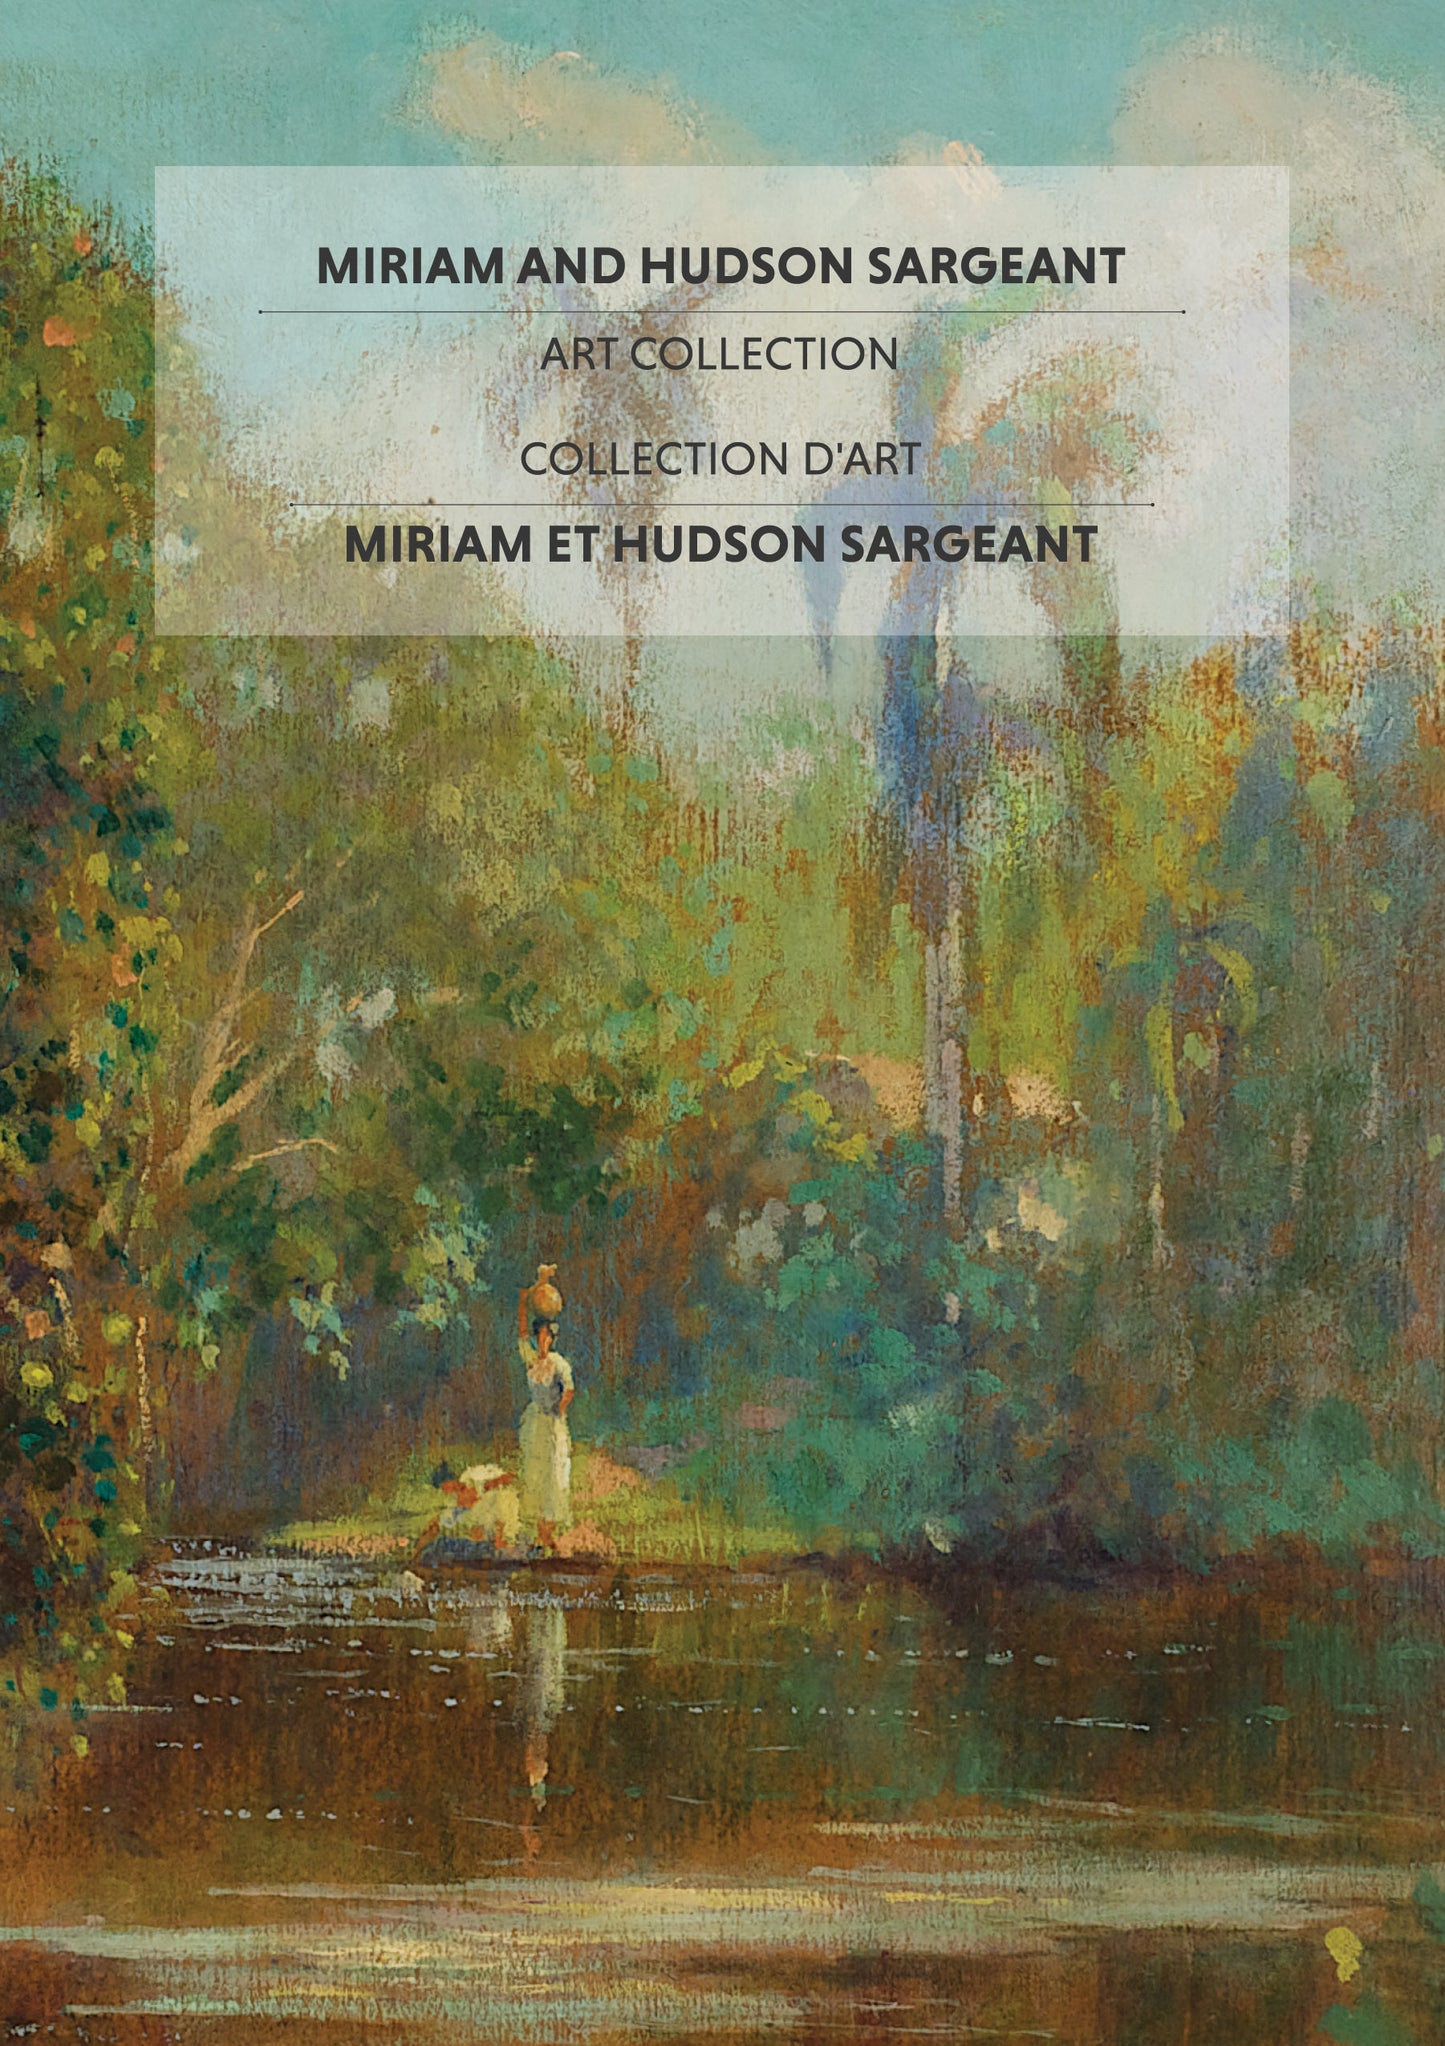 COLLECTION D’ART MIRIAM ET HUDSON SARGEANT